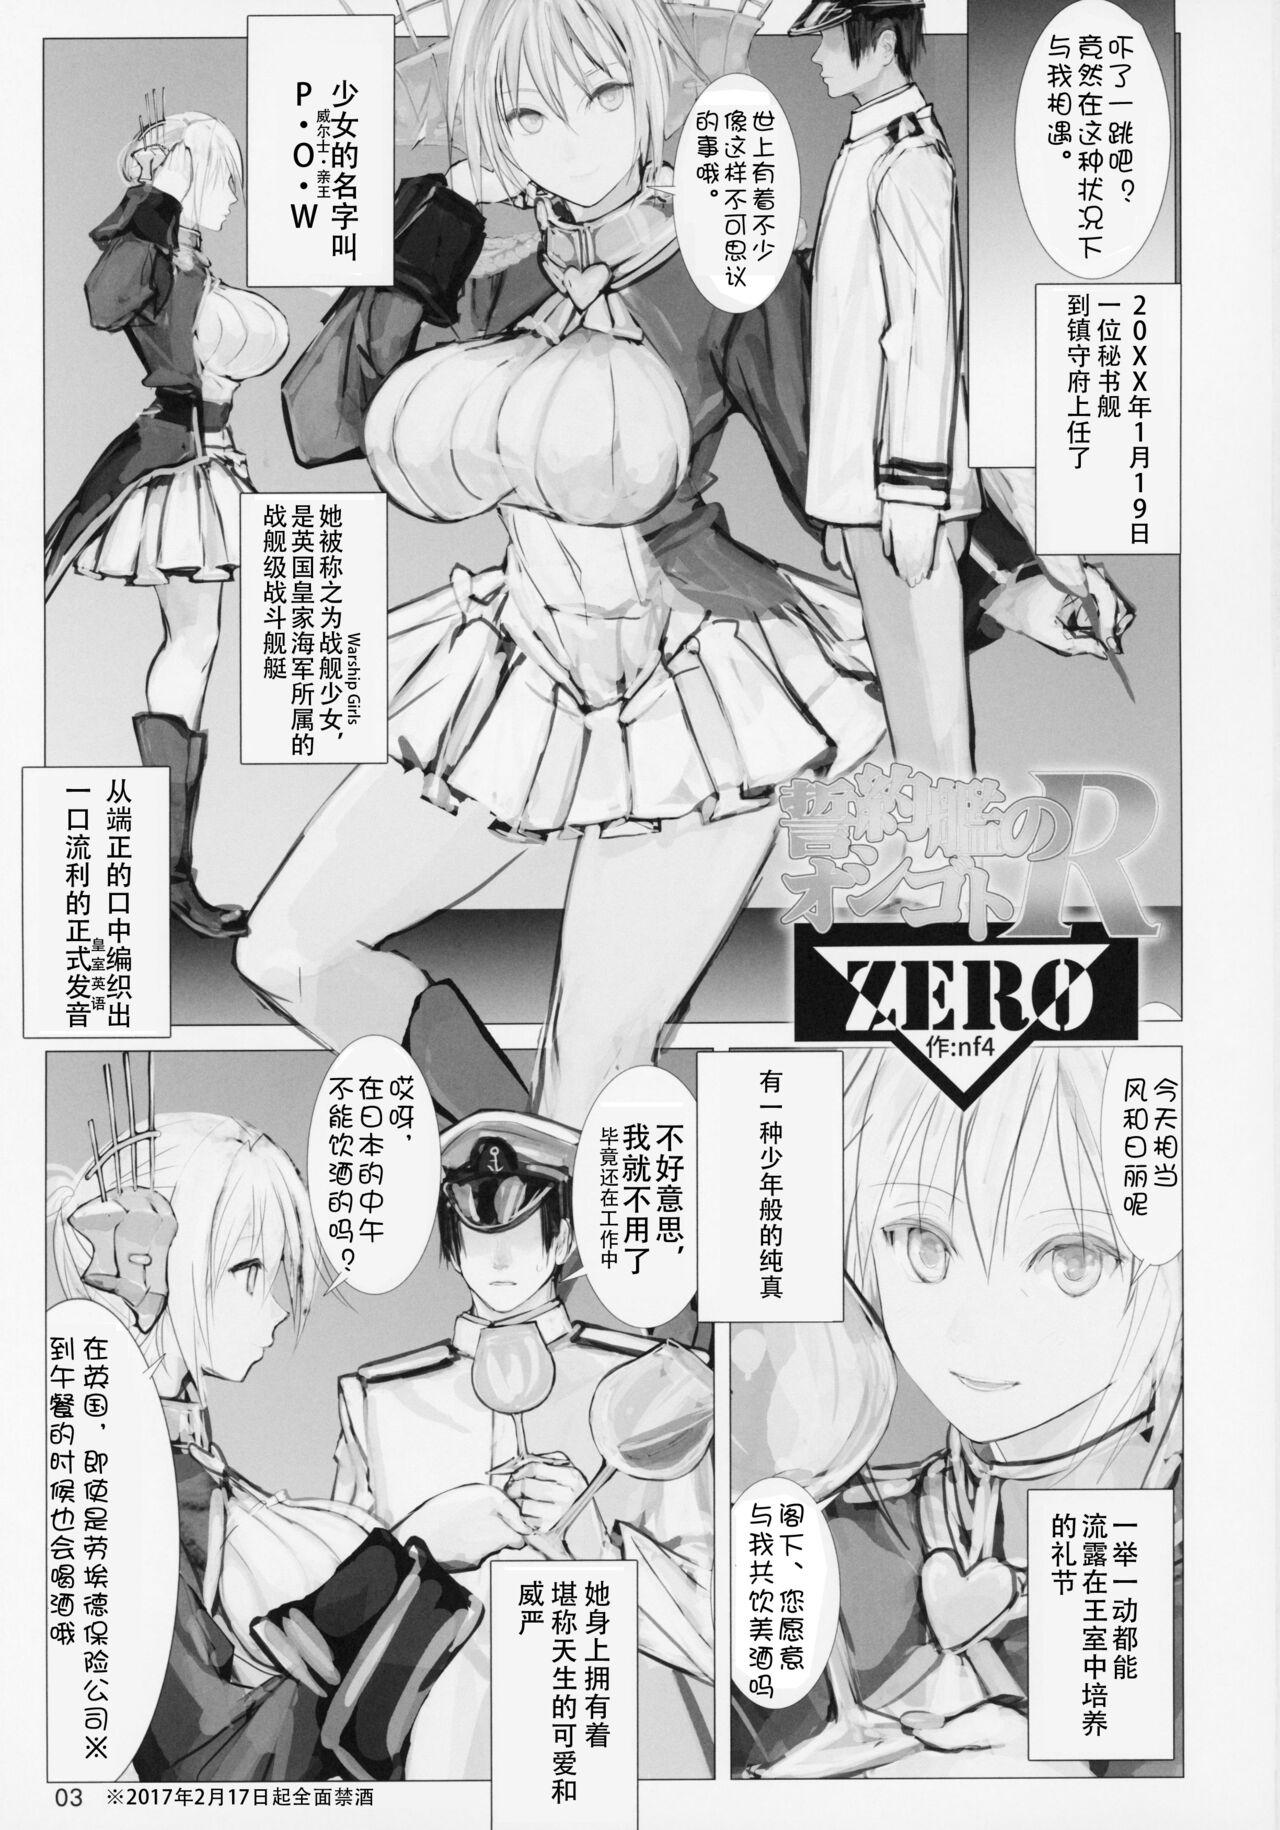 Glamcore Seiyakukan no Oshigoto R ZERO - Warship girls Boots - Picture 2